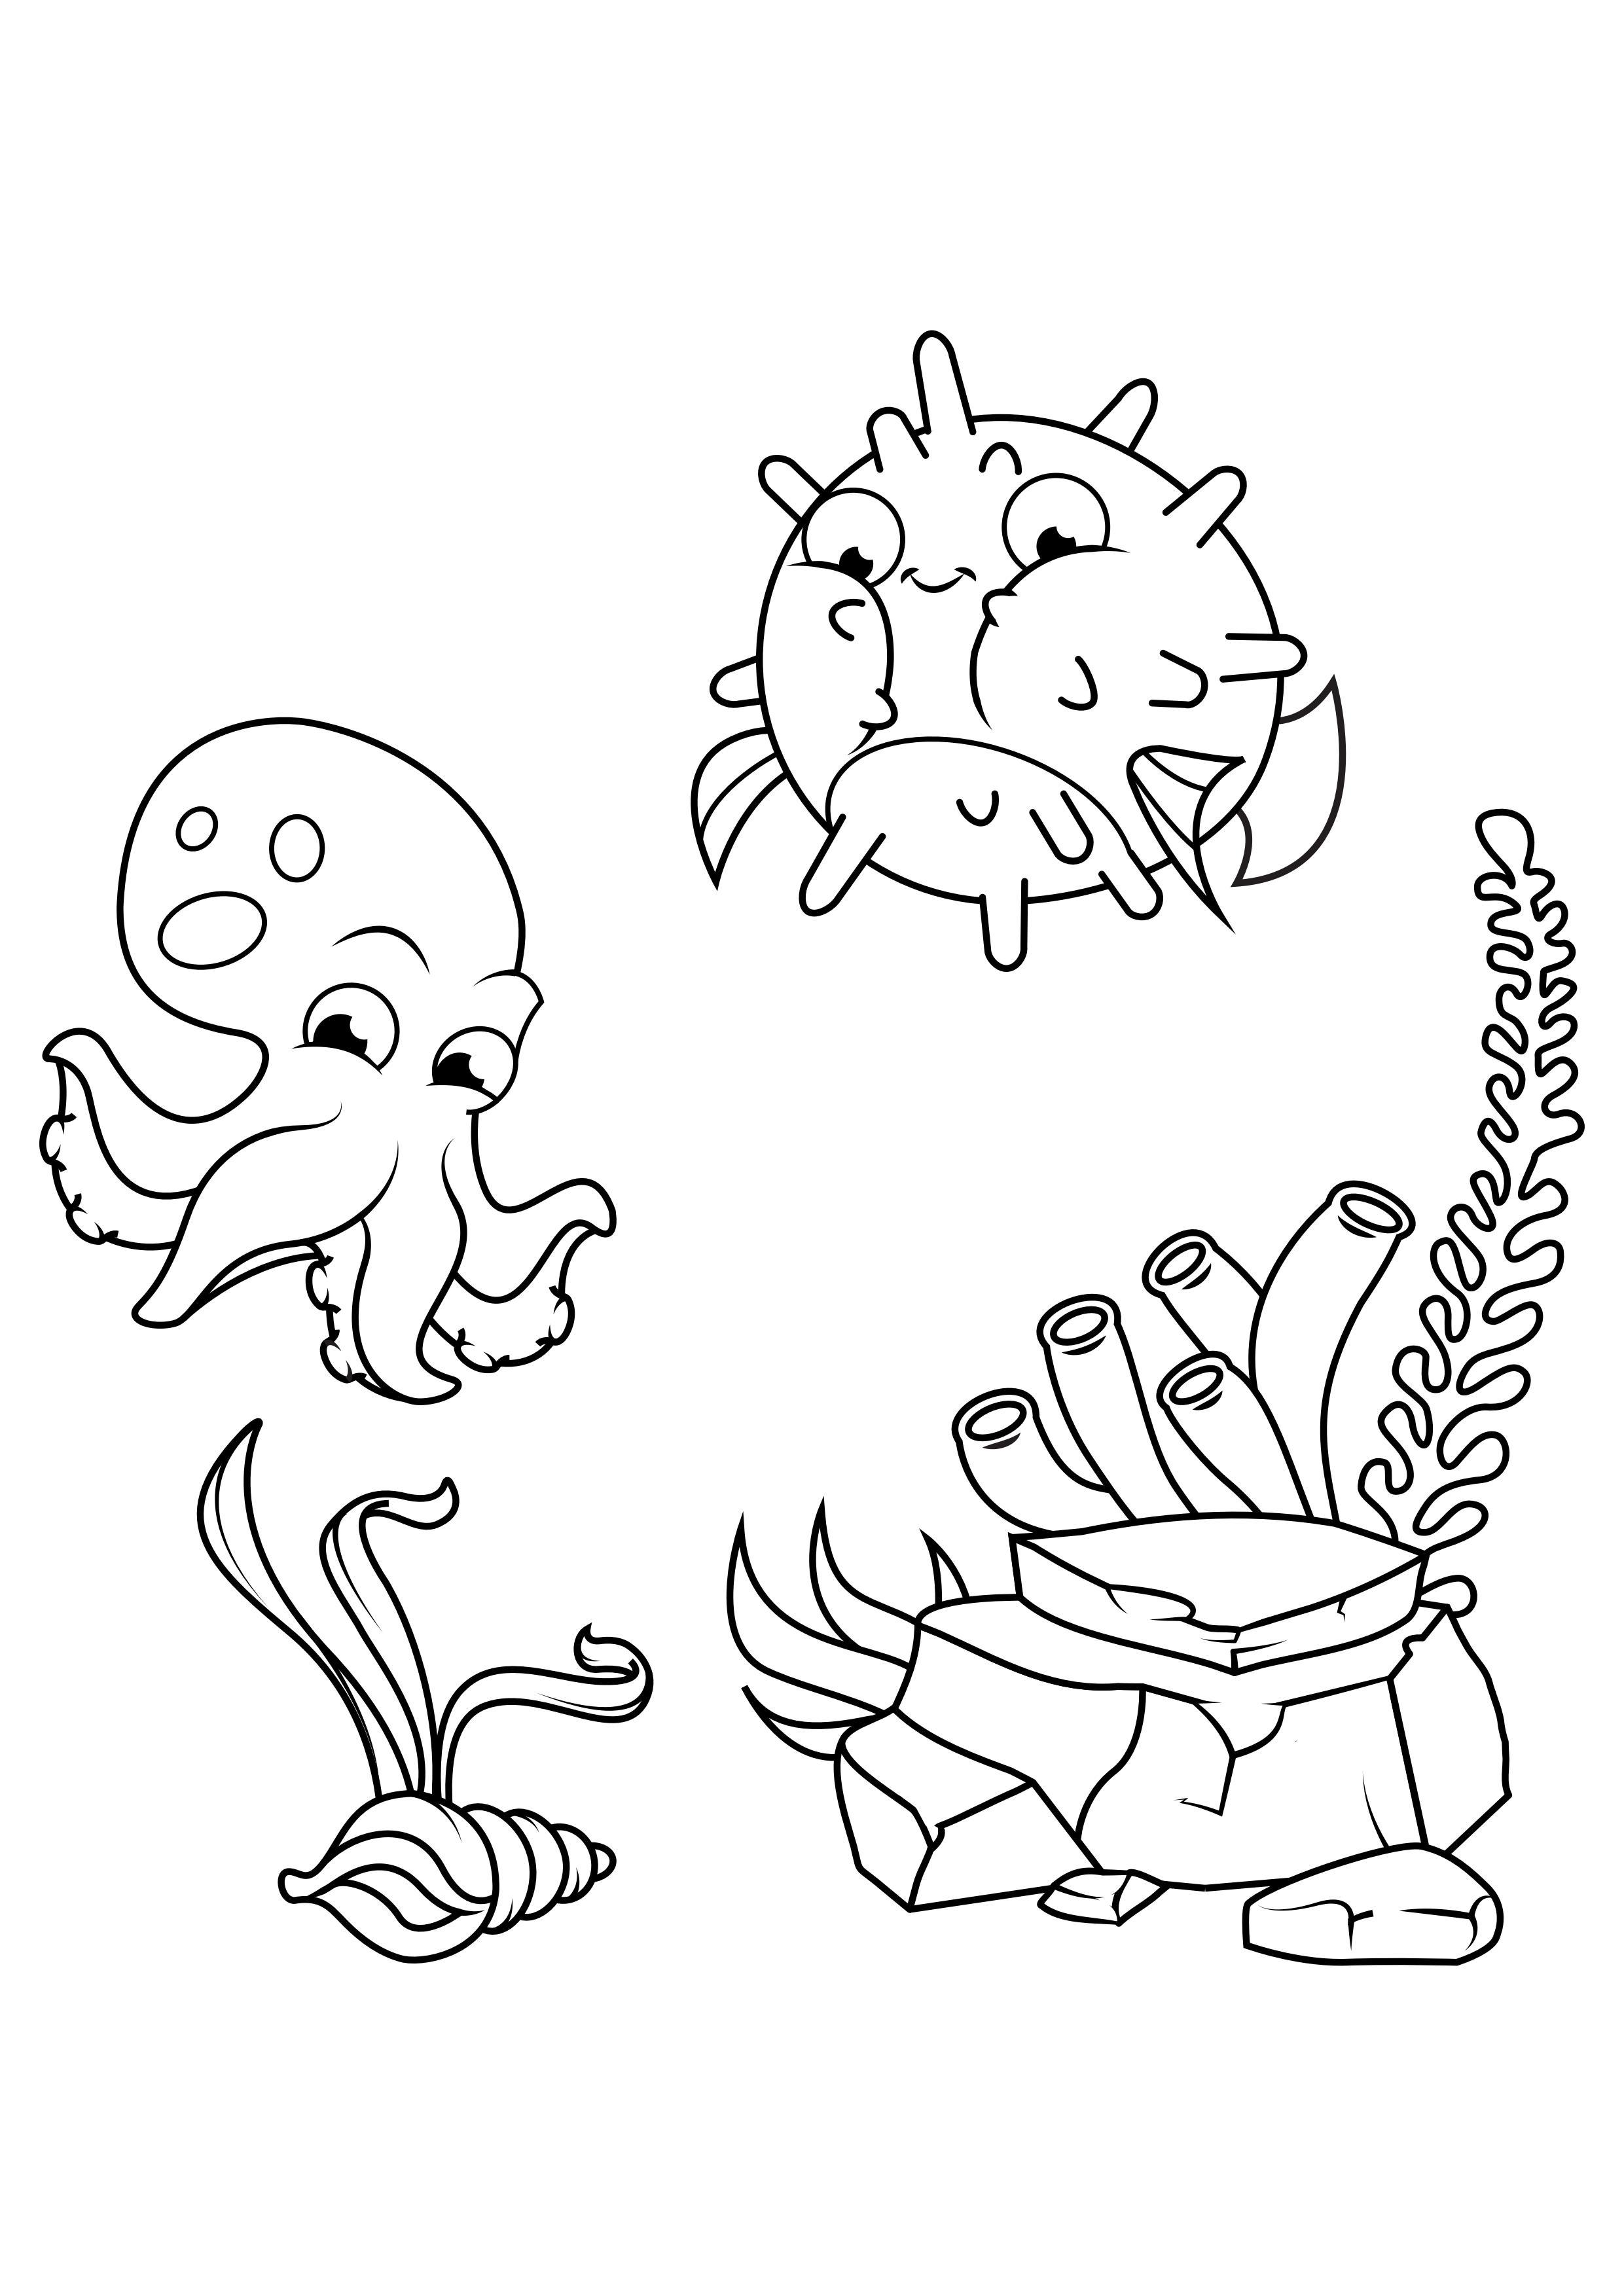 Dibujo para colorear calamares y peces globo nadan alrededor